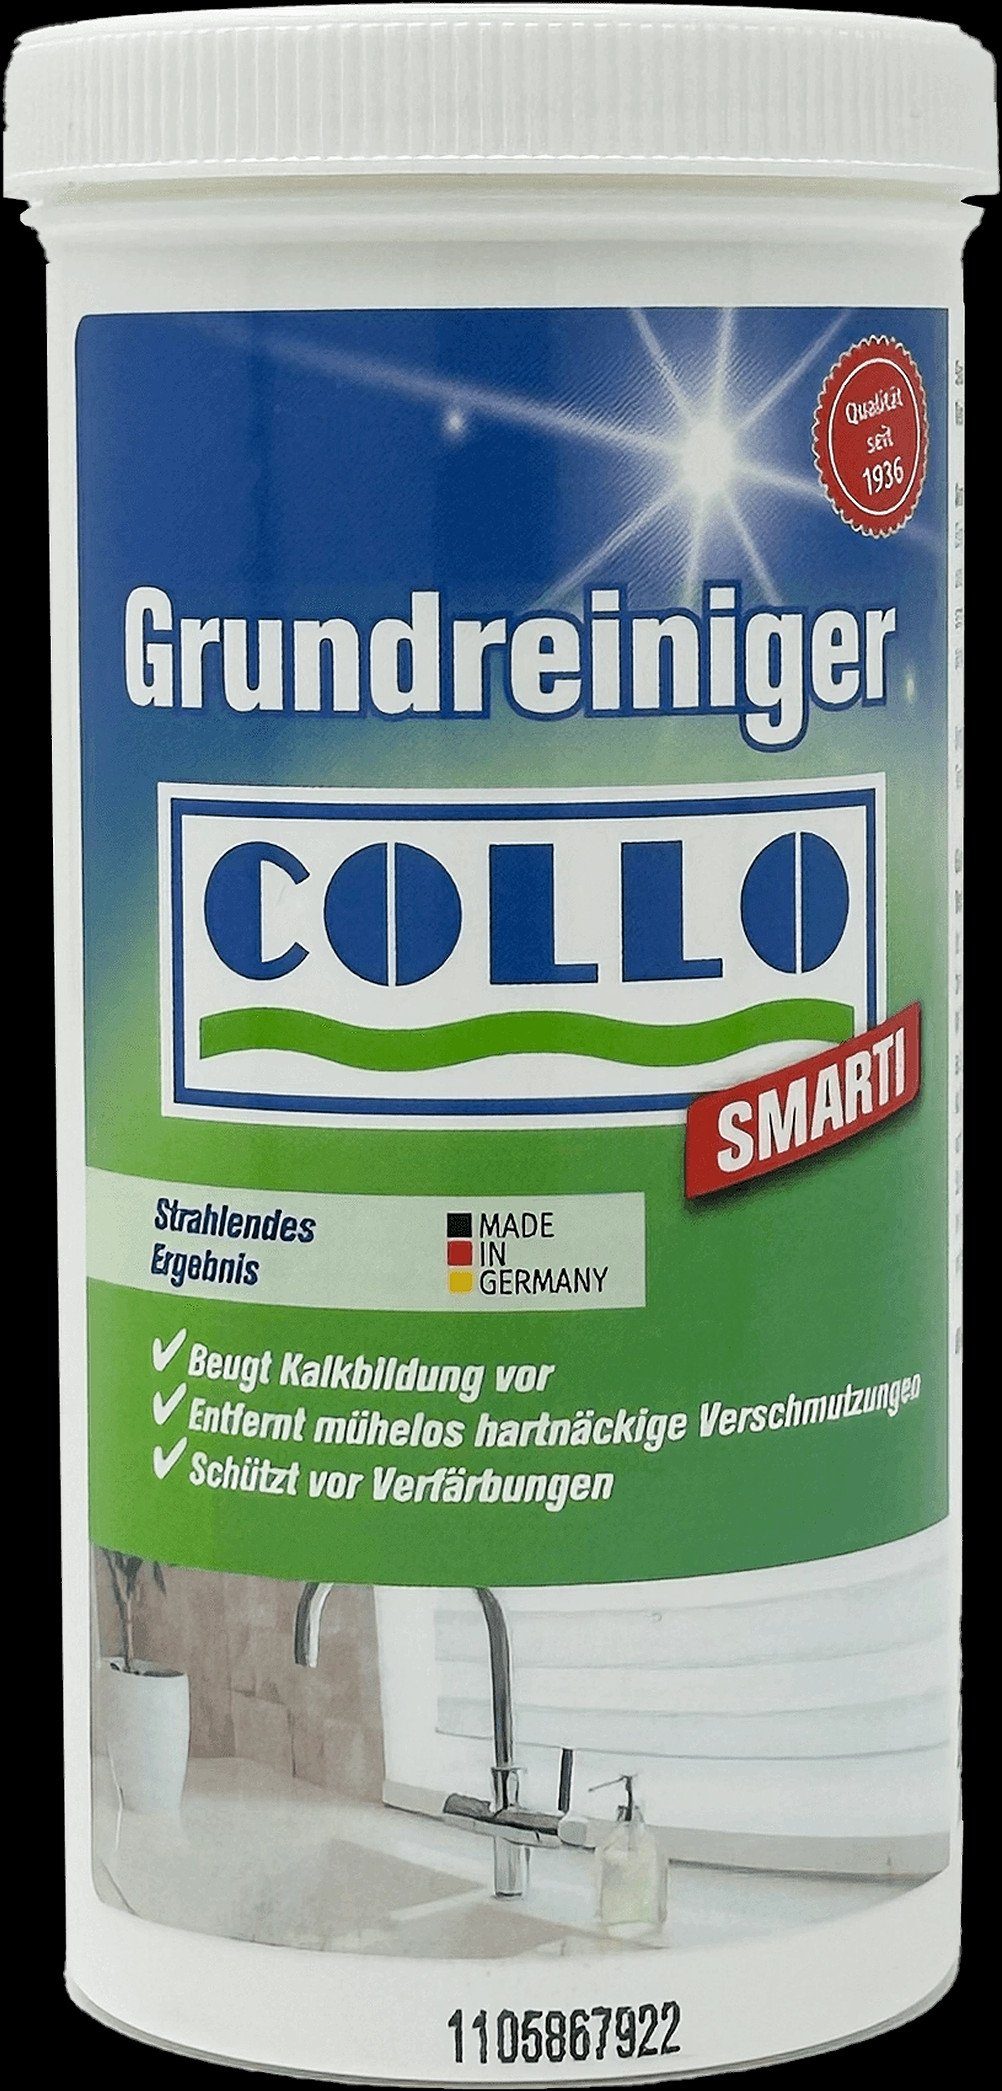 COLLO Collo Smarti Grundreiniger für Keramik-Waschbecken, 200g Küchenreiniger